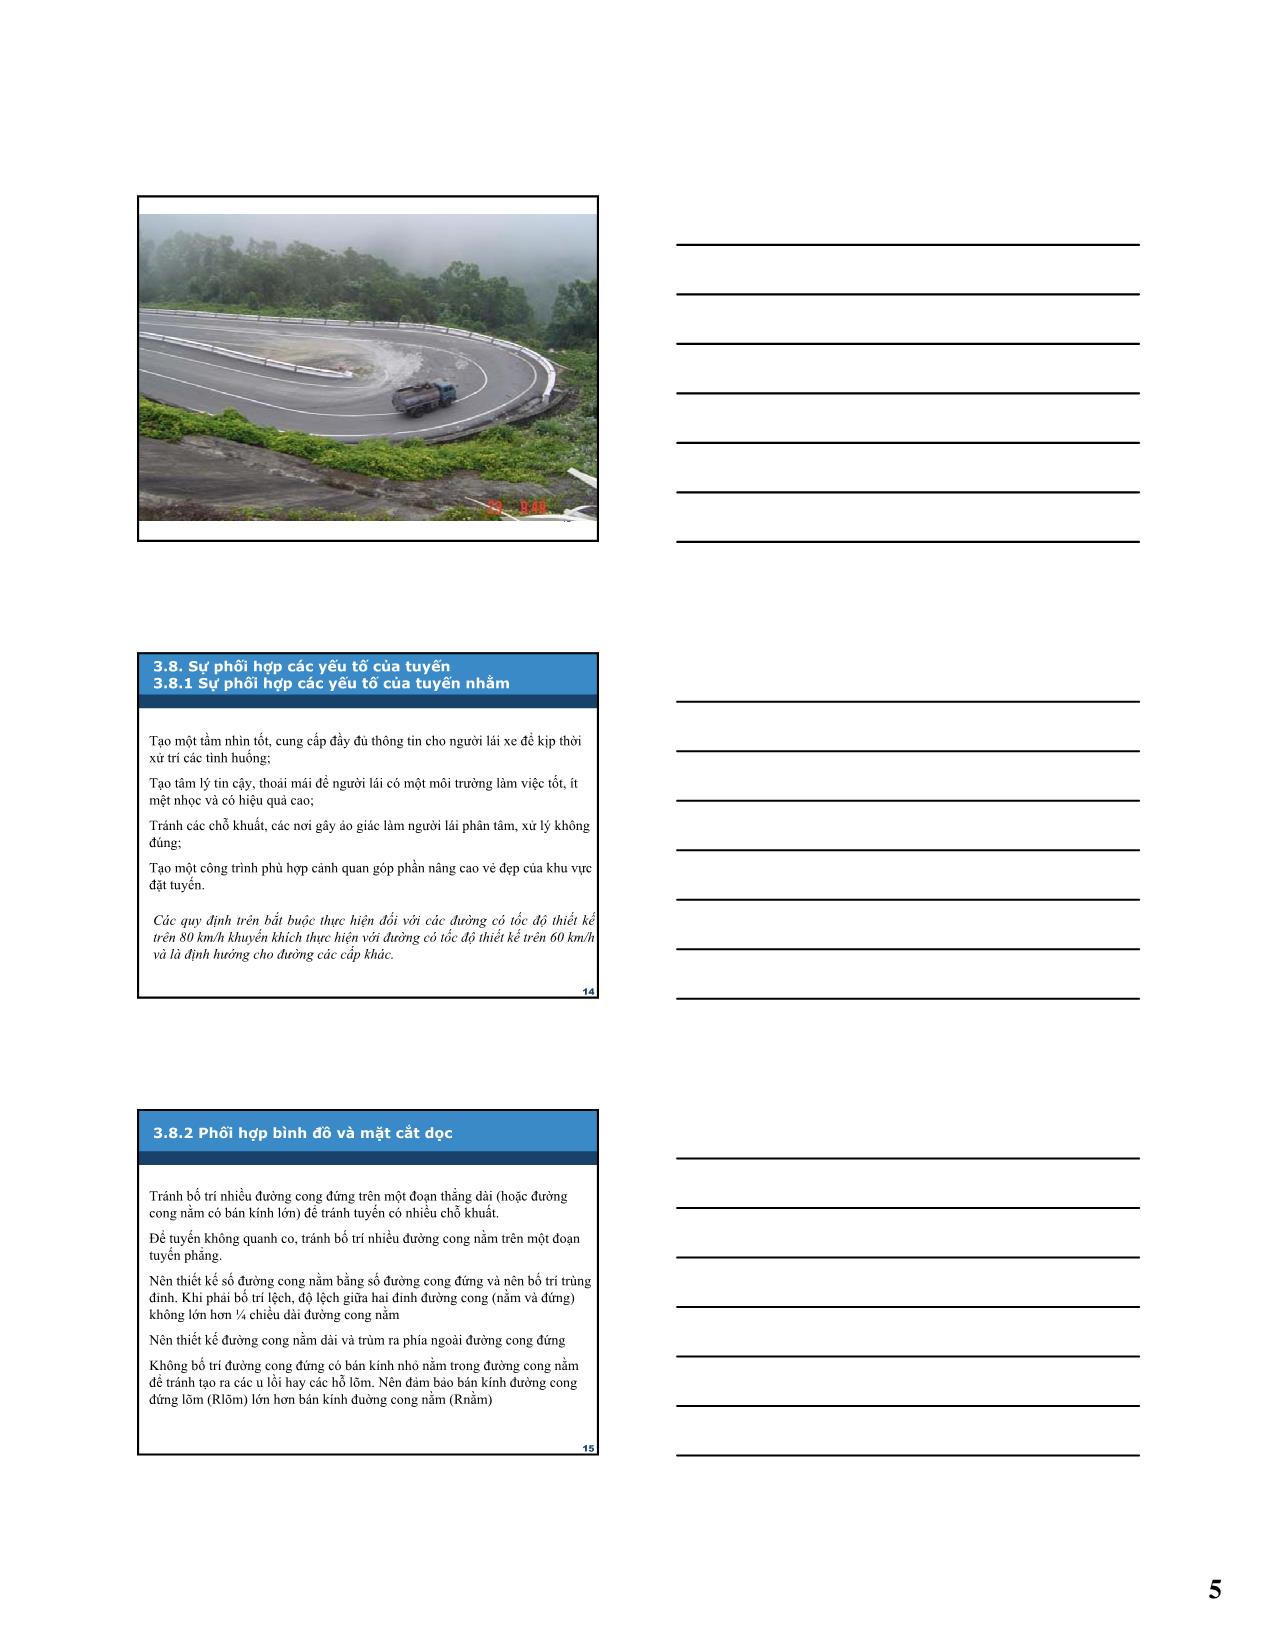 Bài giảng Kỹ thuật hạ tầng giao thông - Phần 3: Thiết kế đường ô tô và các công trình trên đường - Chương 3: Thiết kế trắc dọc tuyến đường trang 5